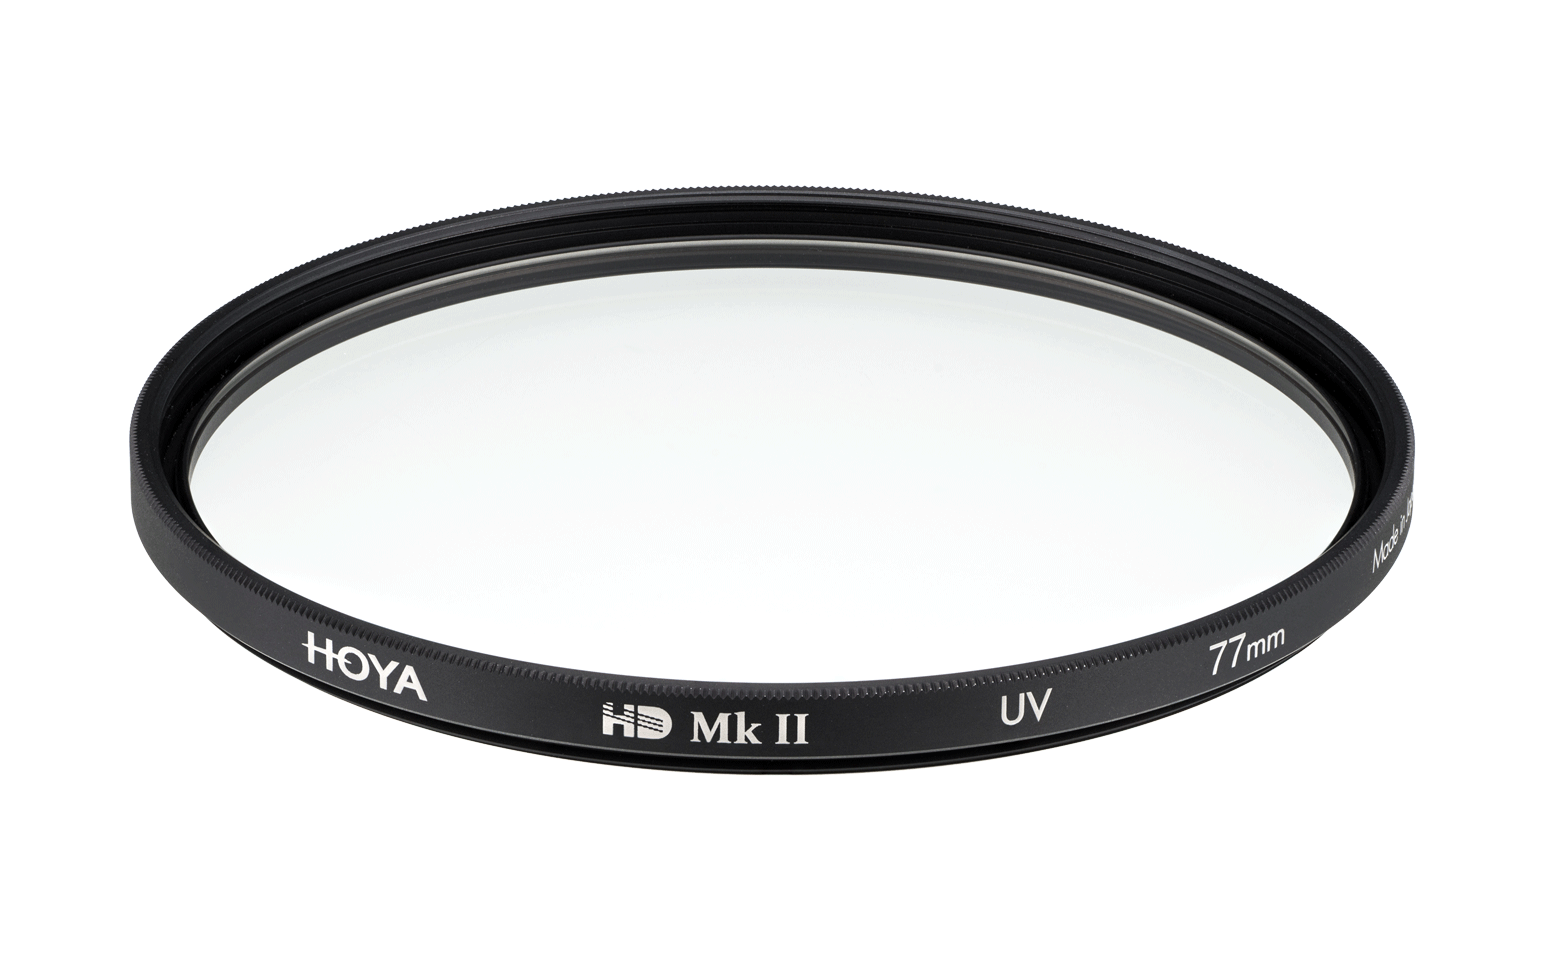 HOYA HD Mk II UV Filter